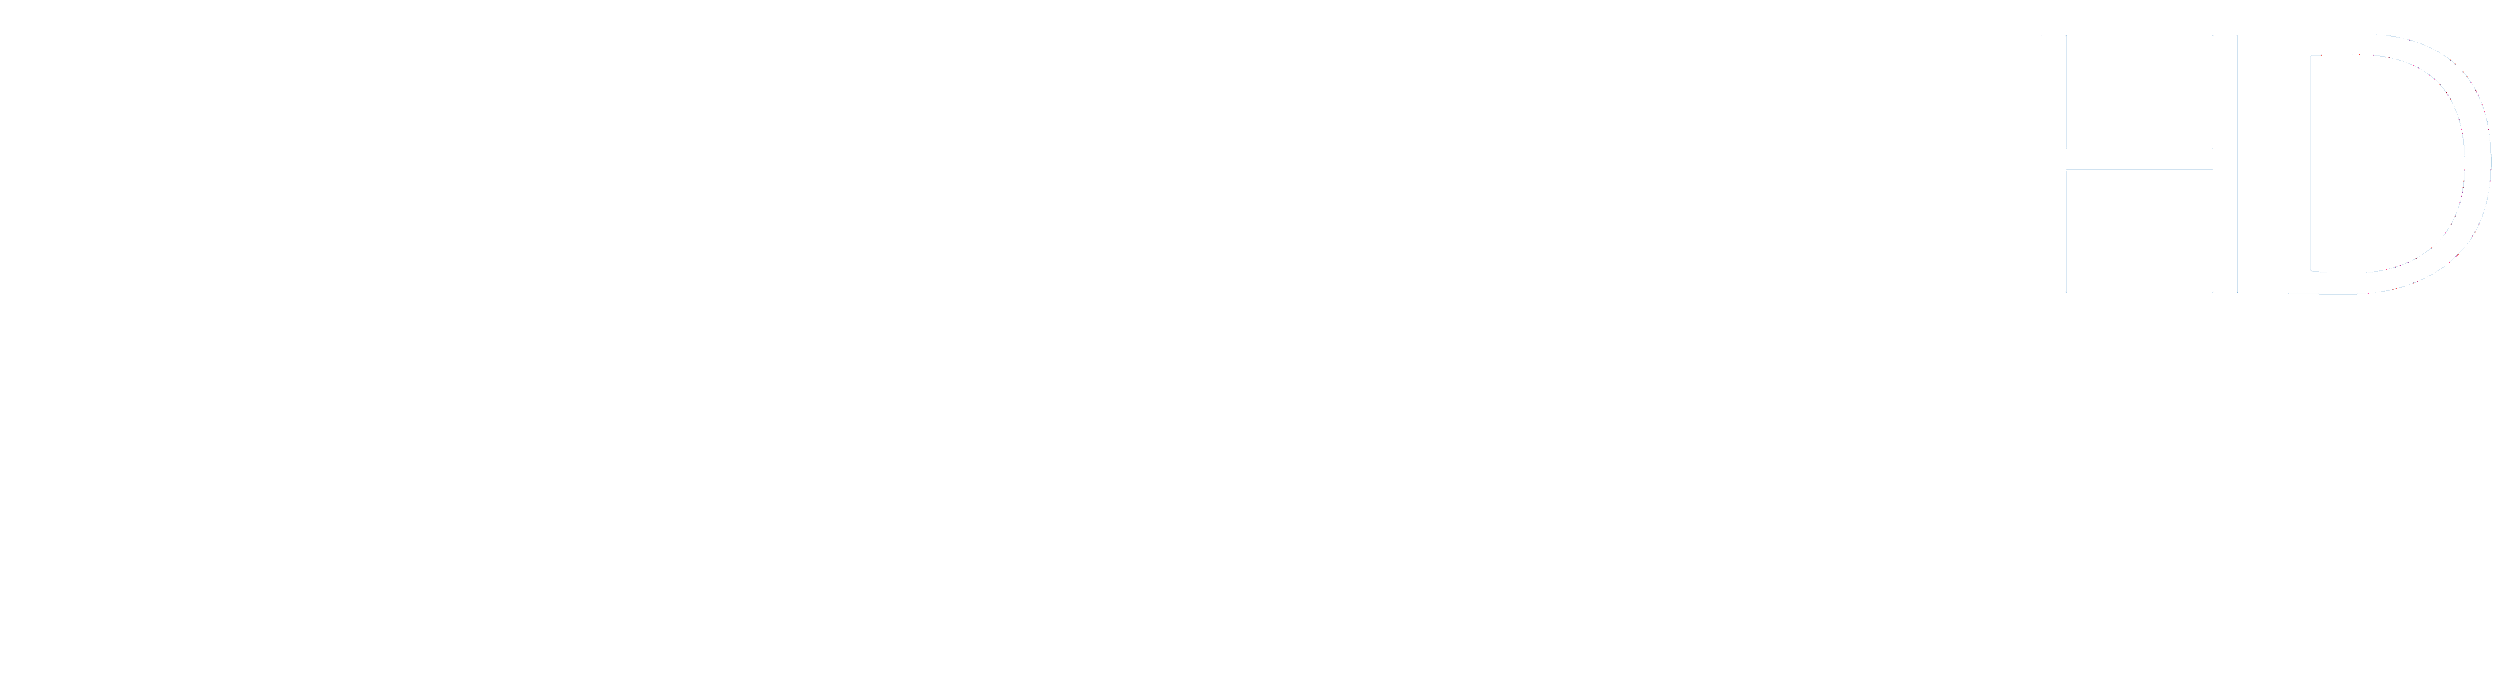 Mdr_Fernsehen_HD_Logo_2017.png